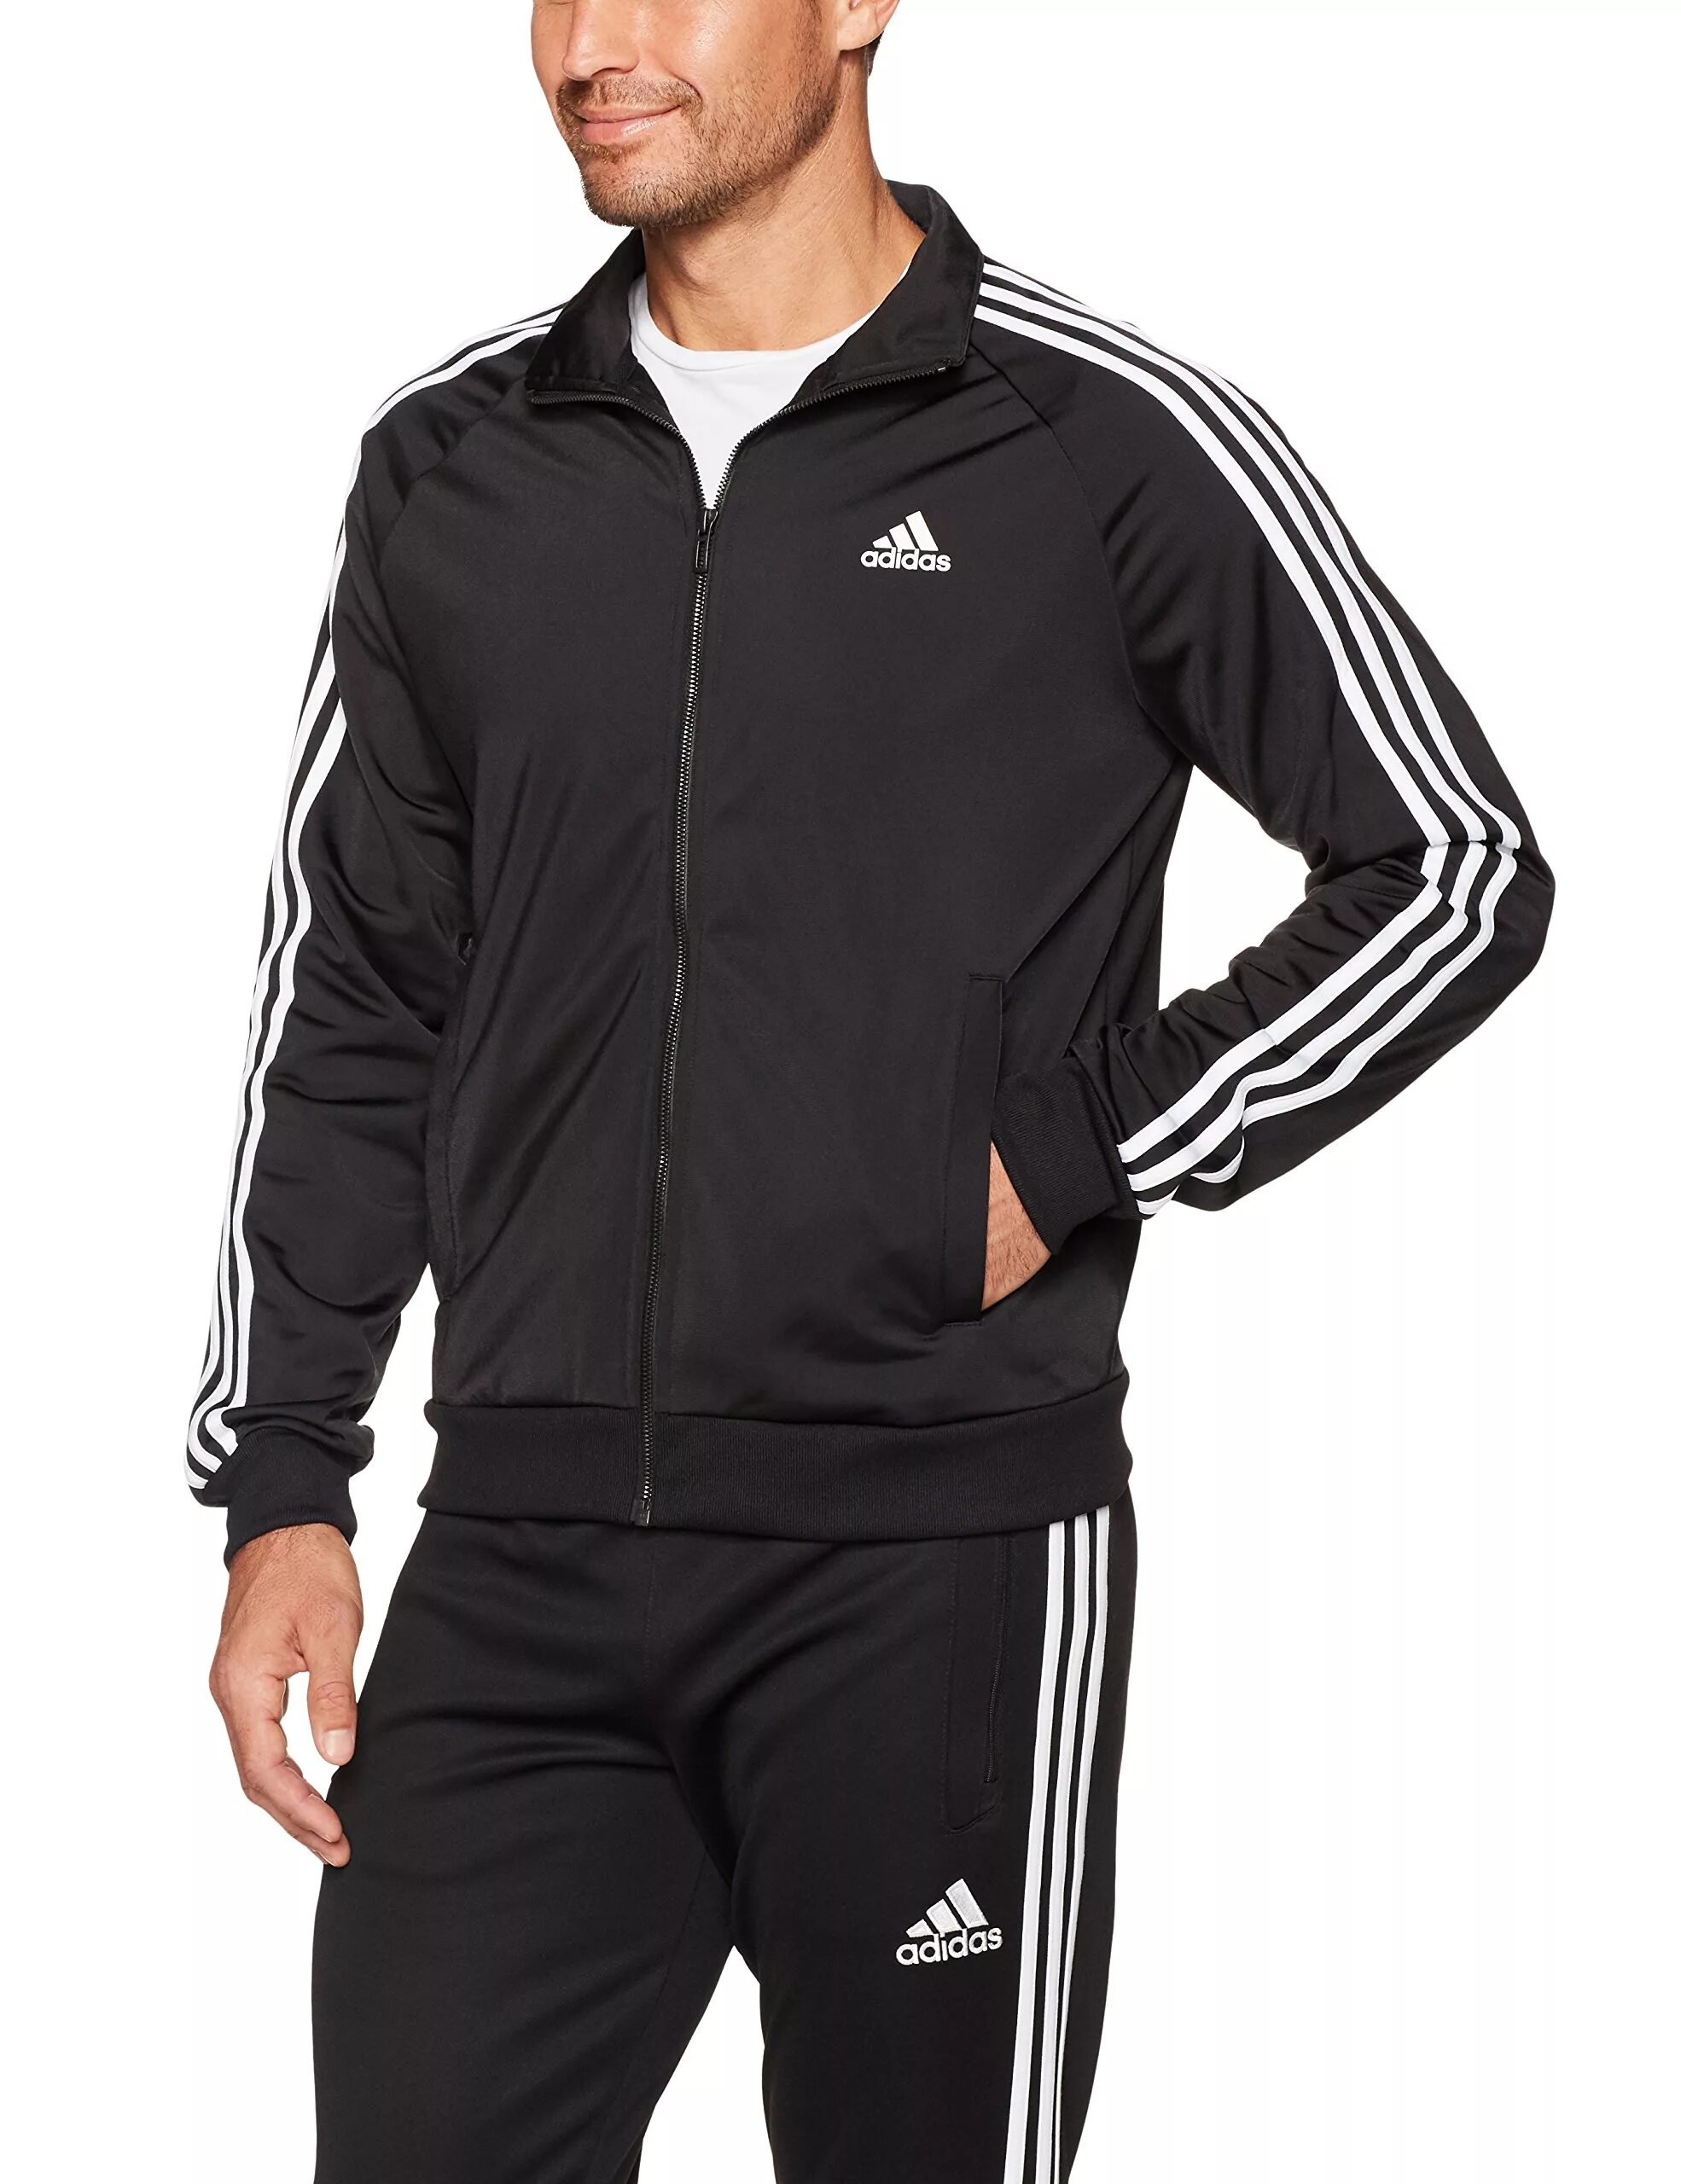 Спортивный костюм адидас мужской Essentials 3. Adidas 3 Stripes костюм мужской 2020. Track Jacket адидас. Adidas Essentials 3-Stripes костюм. Adidas track